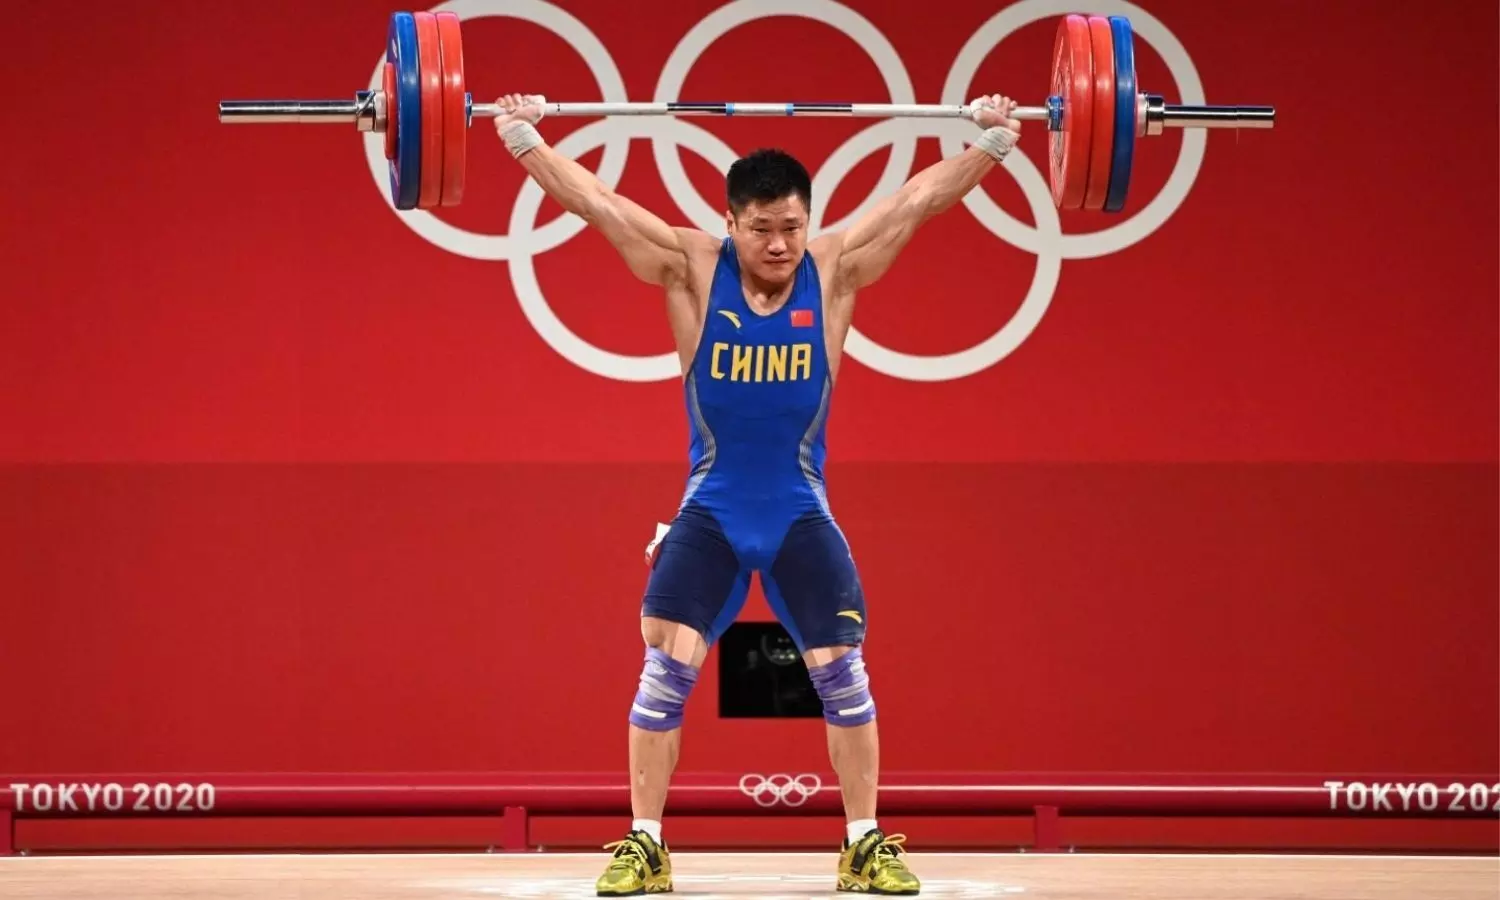 en million Fortolke Sygeplejeskole At 37, Lyu Xiaojun becomes oldest Olympic weightlifting champion